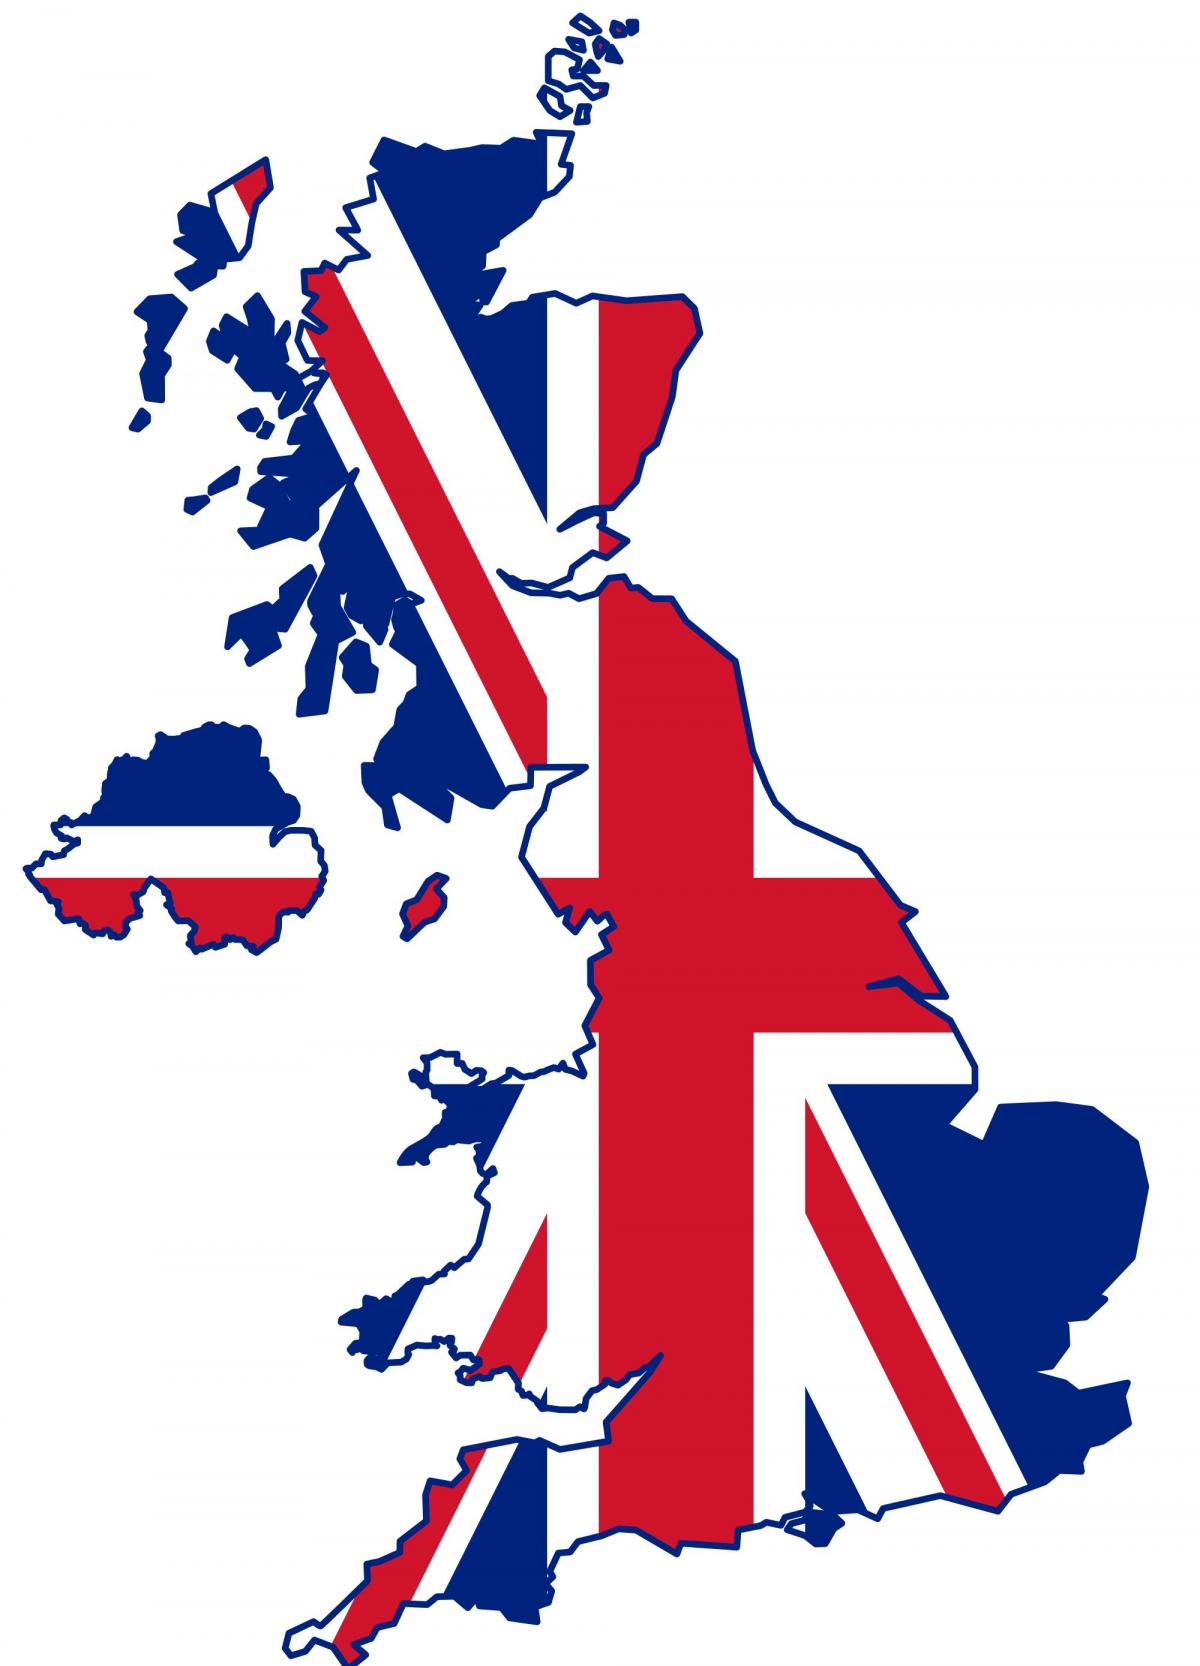 Mapa de la bandera del Reino Unido (UK)